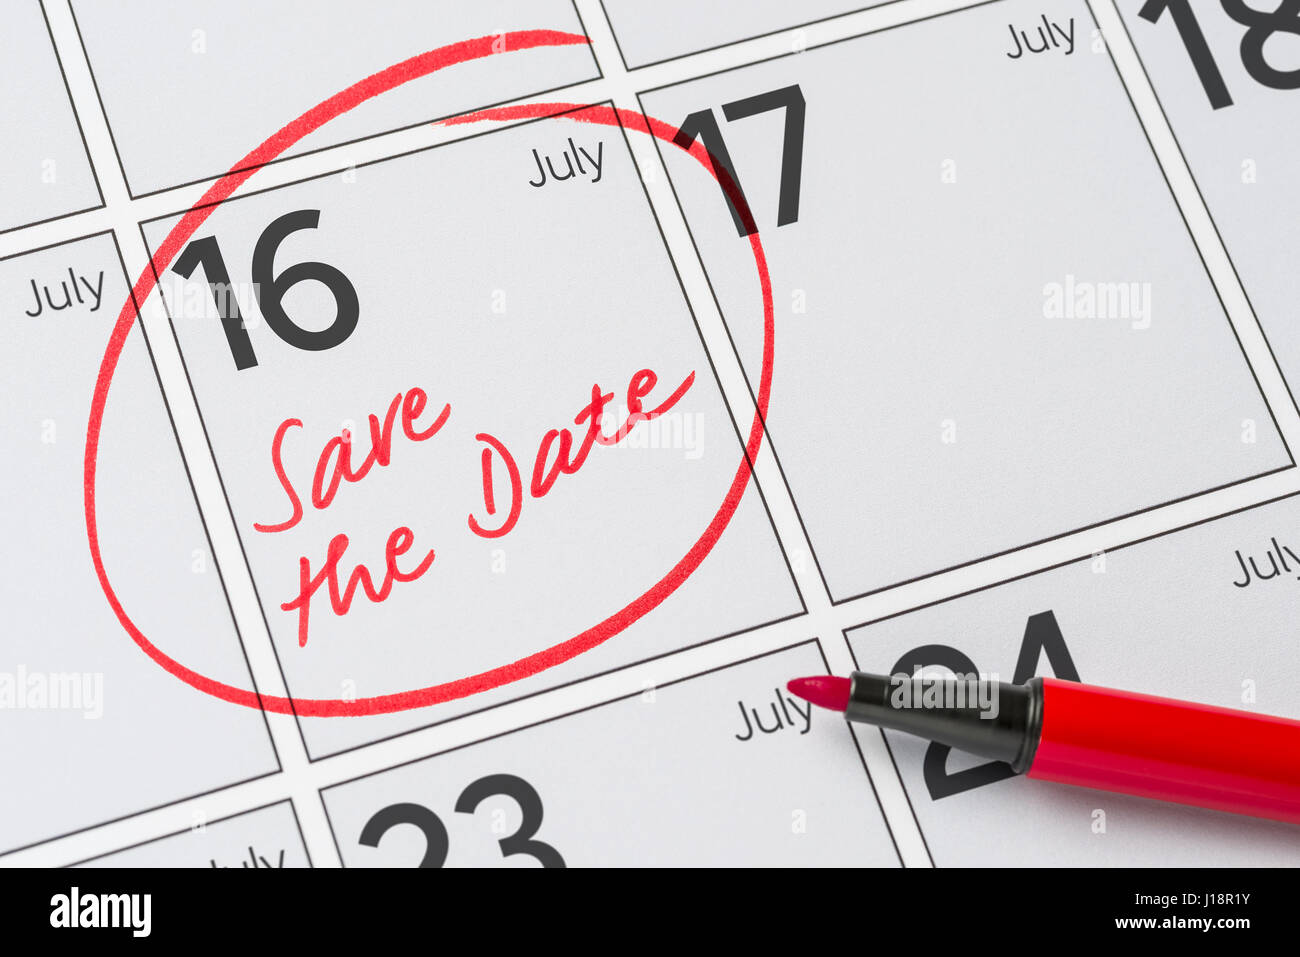 Enregistrer la date inscrite sur un calendrier - Juillet 16 Banque D'Images